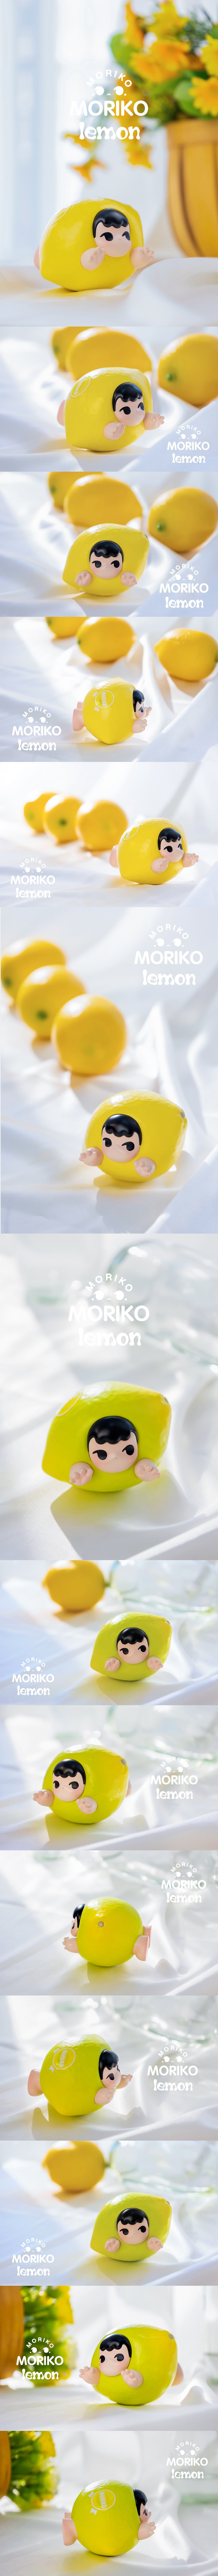 MoeDouble Moriko Lemon / Lime  Collectible Figurine